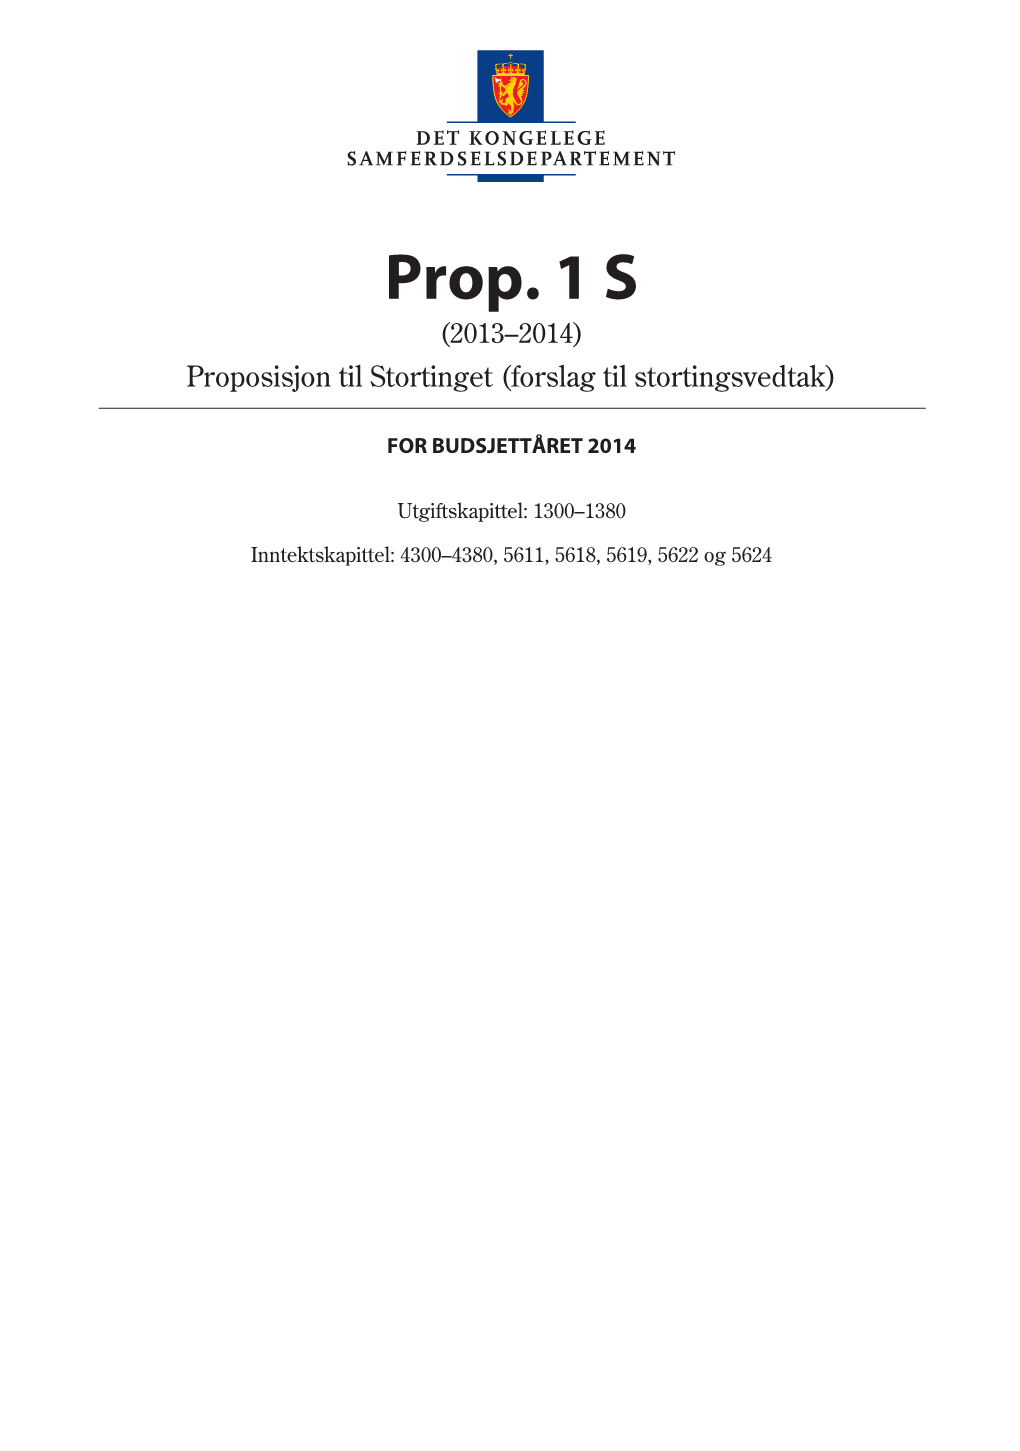 Prop. 1 S (2013–2014) Det Kongelege Samferdselsdepartement